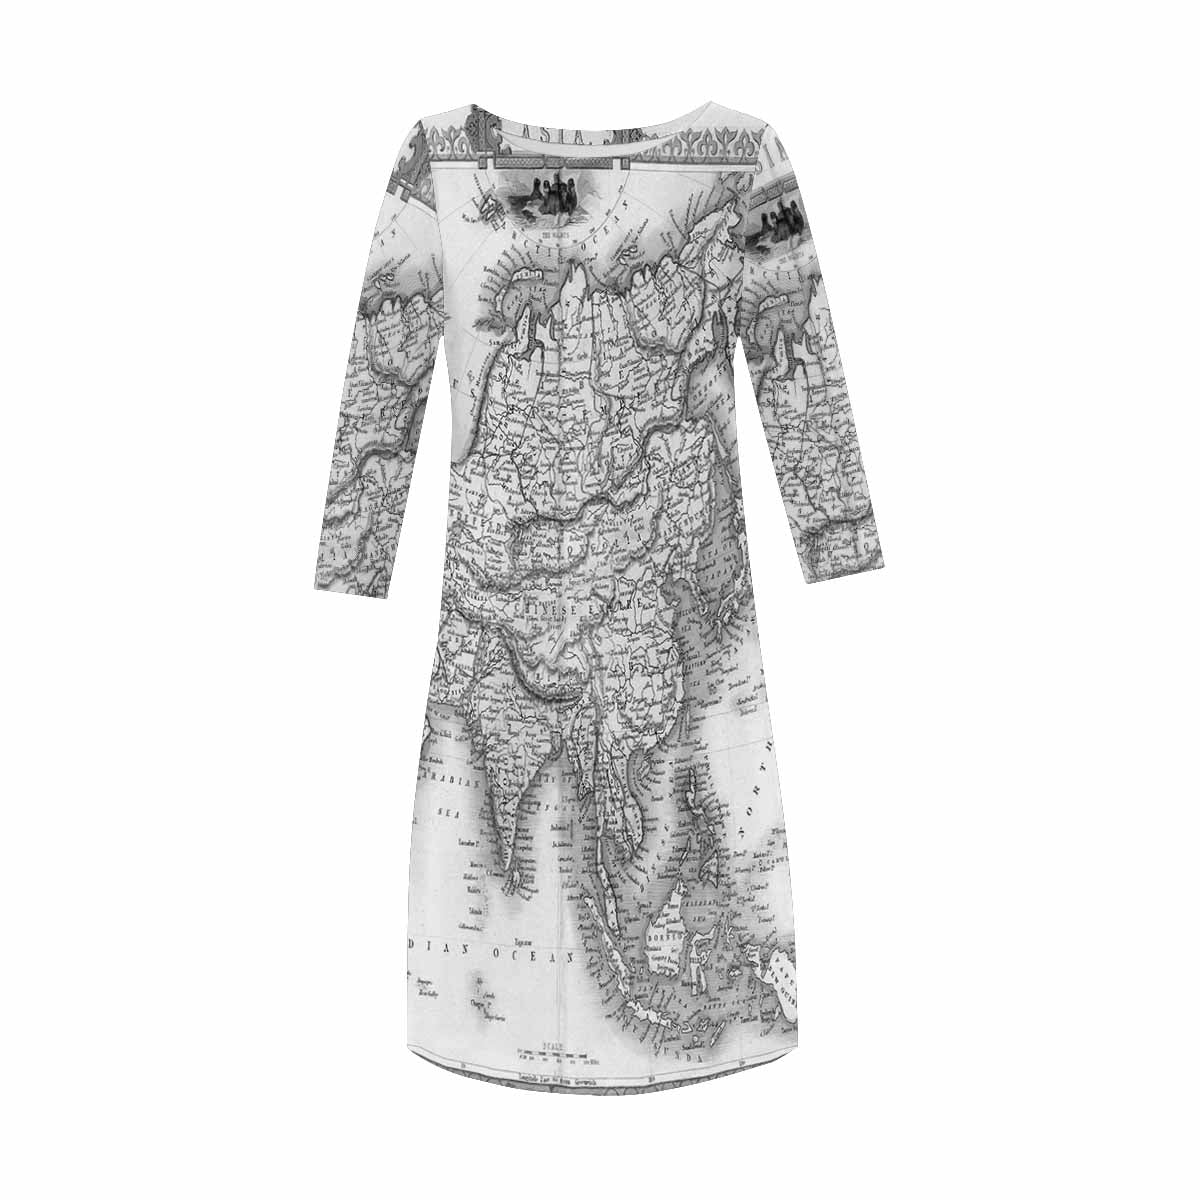 Antique Map loose dress, MODEL 29532, design 29